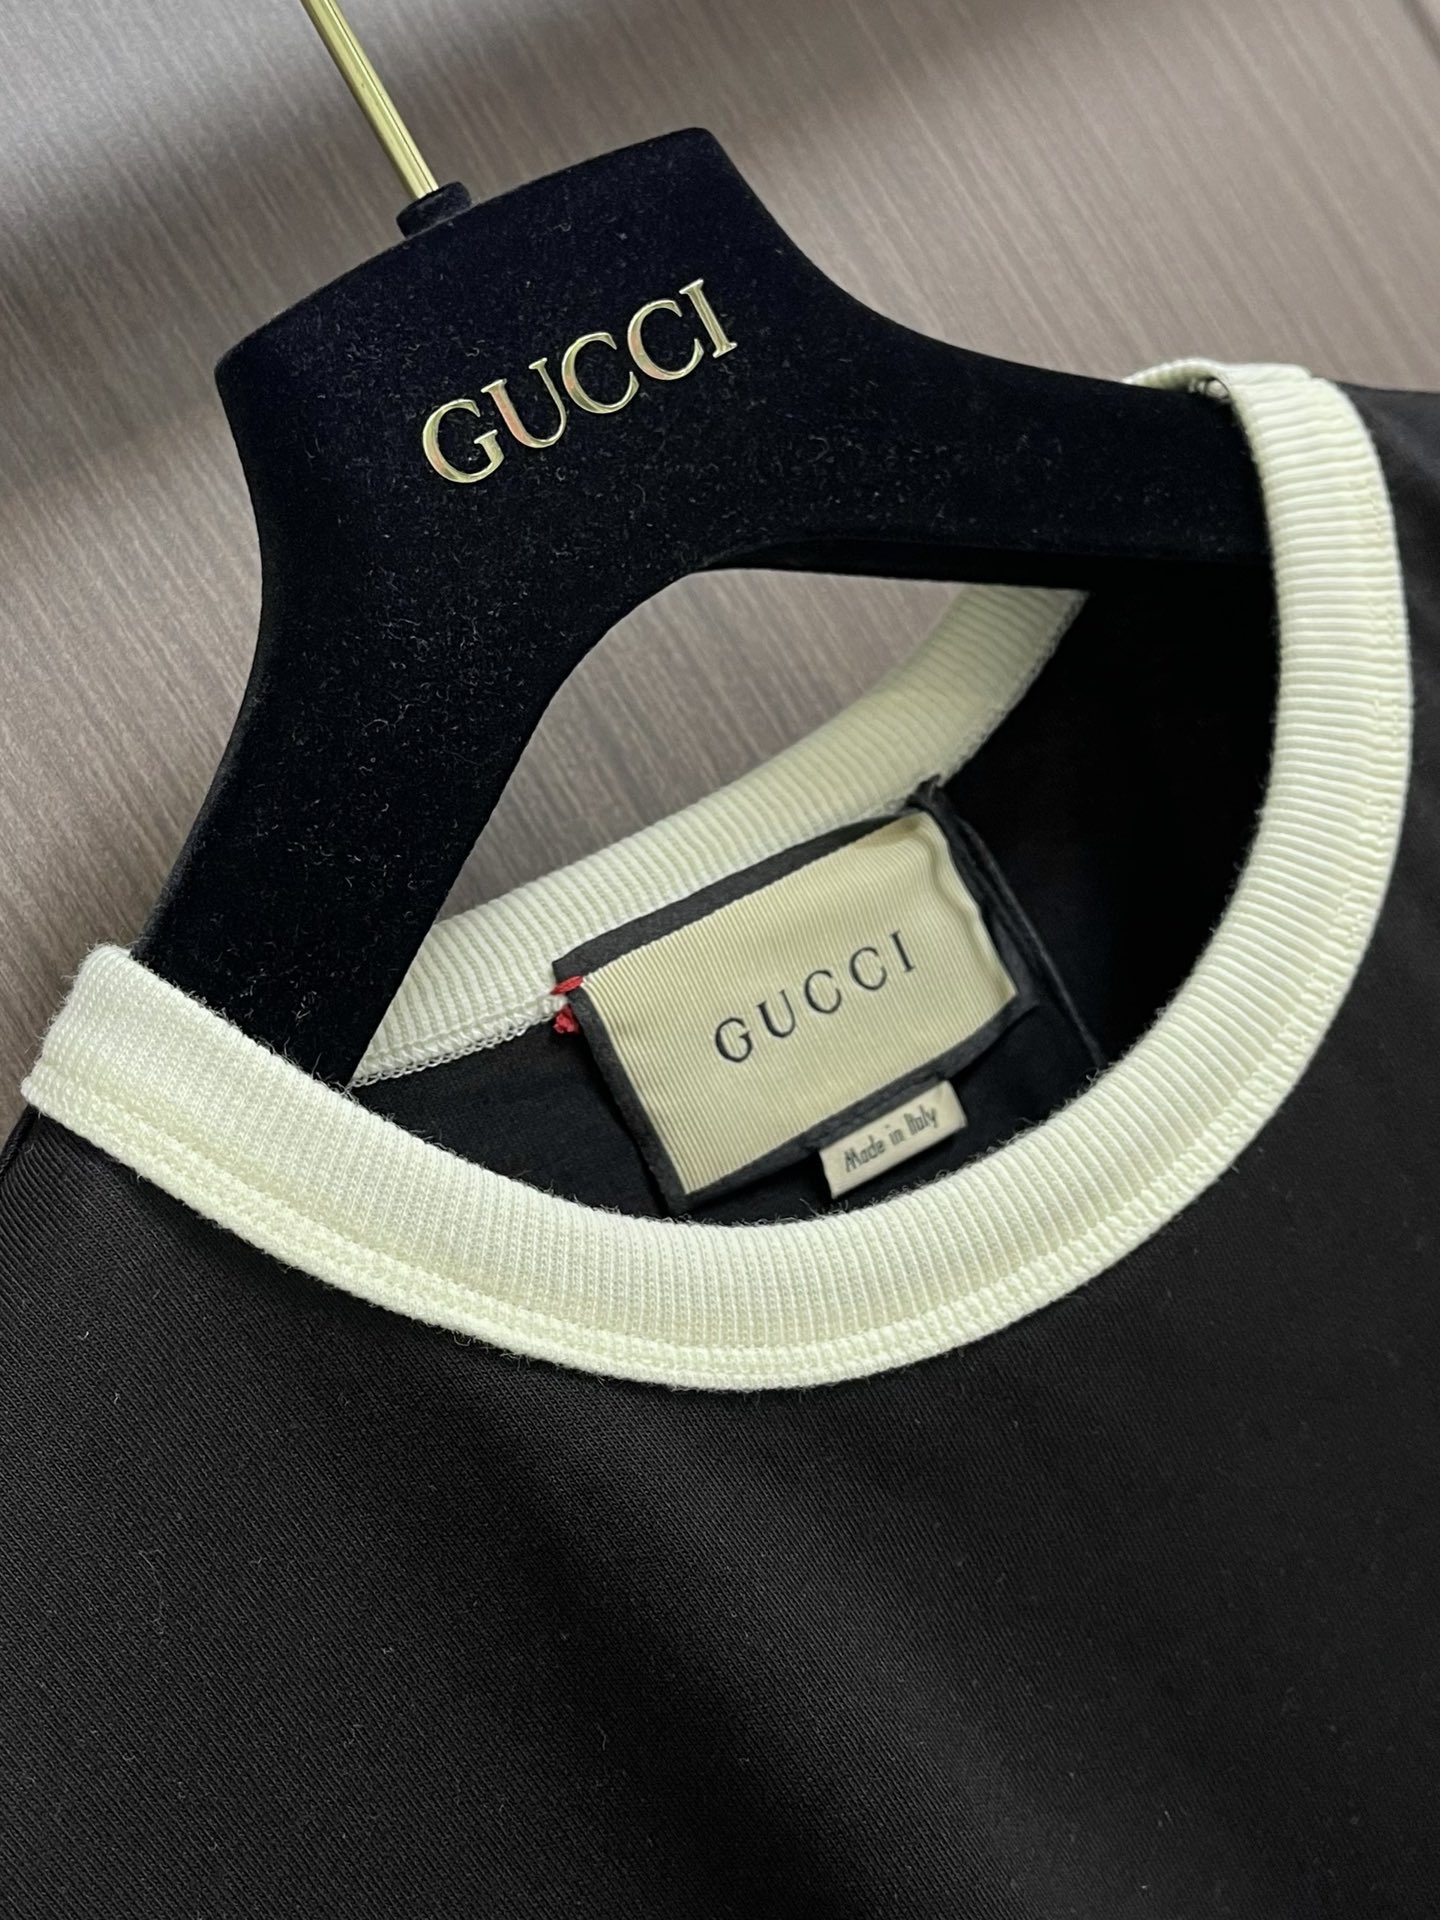 Gucci简约刺绣短袖T恤宽松慵懒风洋气薄厚适中版型宽松显瘦舒适不紧绷圆领设计修饰脖颈简洁设计上身就是时